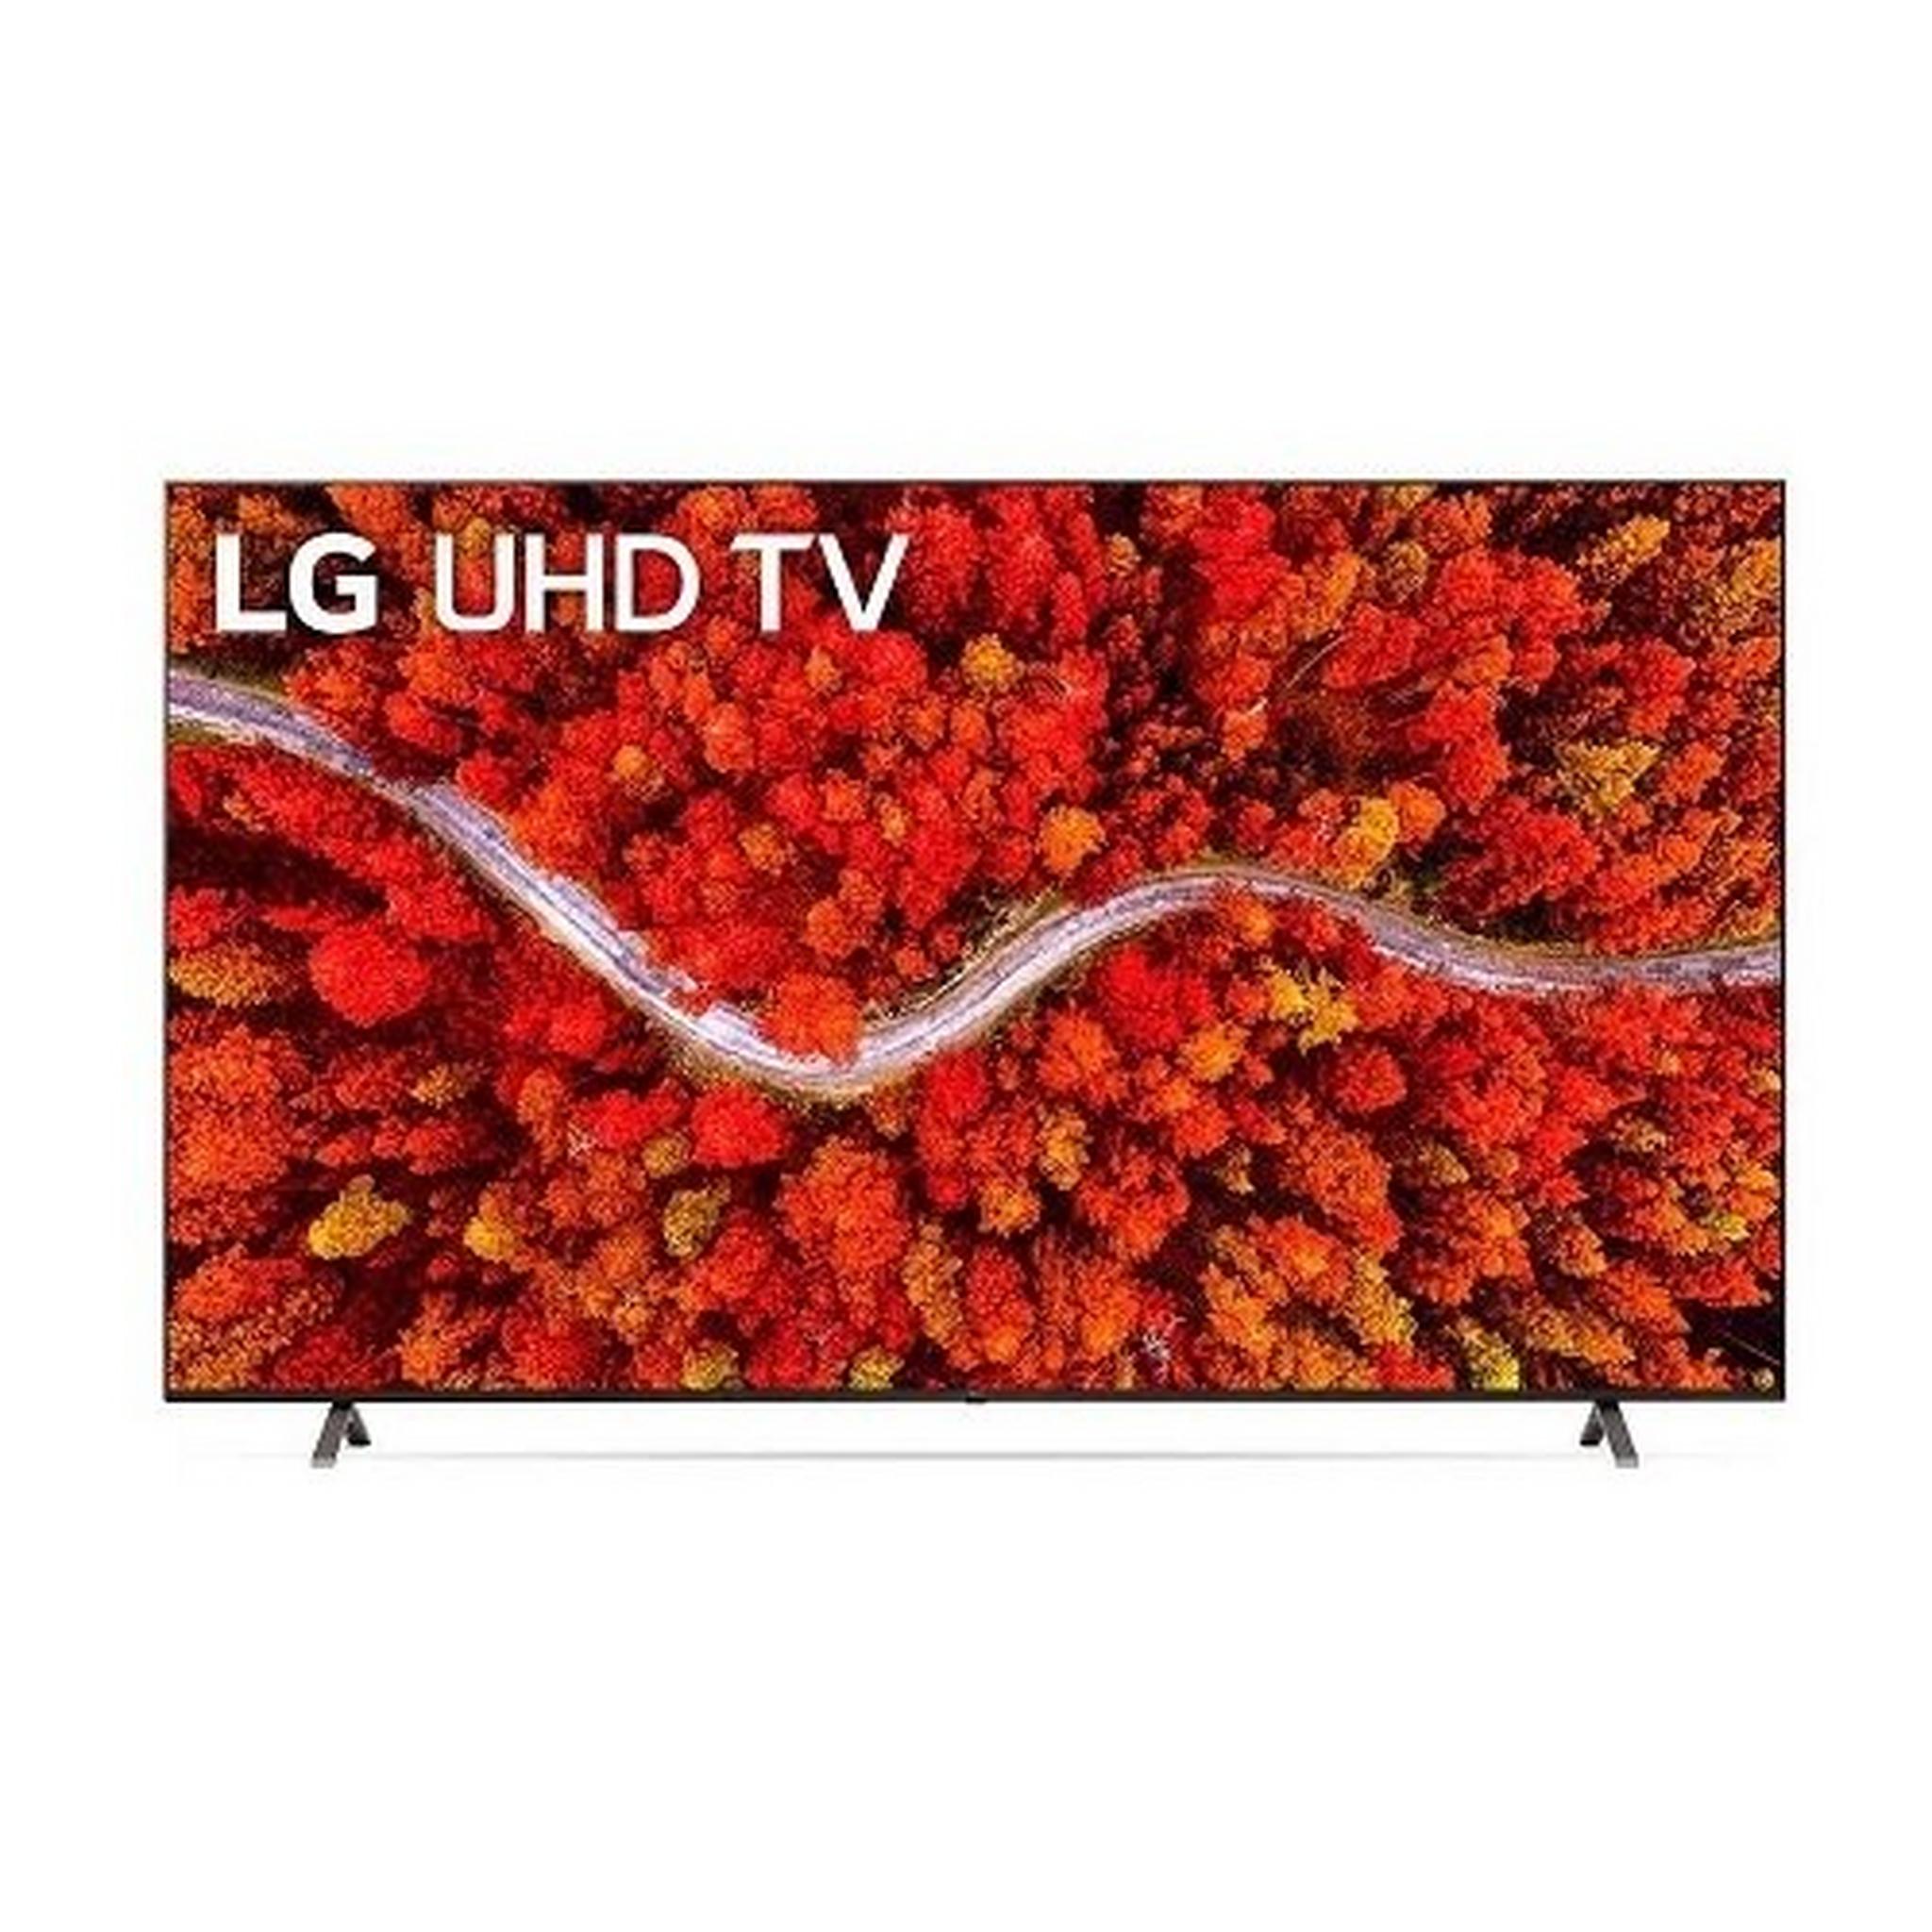 LG 86-Inch 4K UHD LED TV (UP8050)